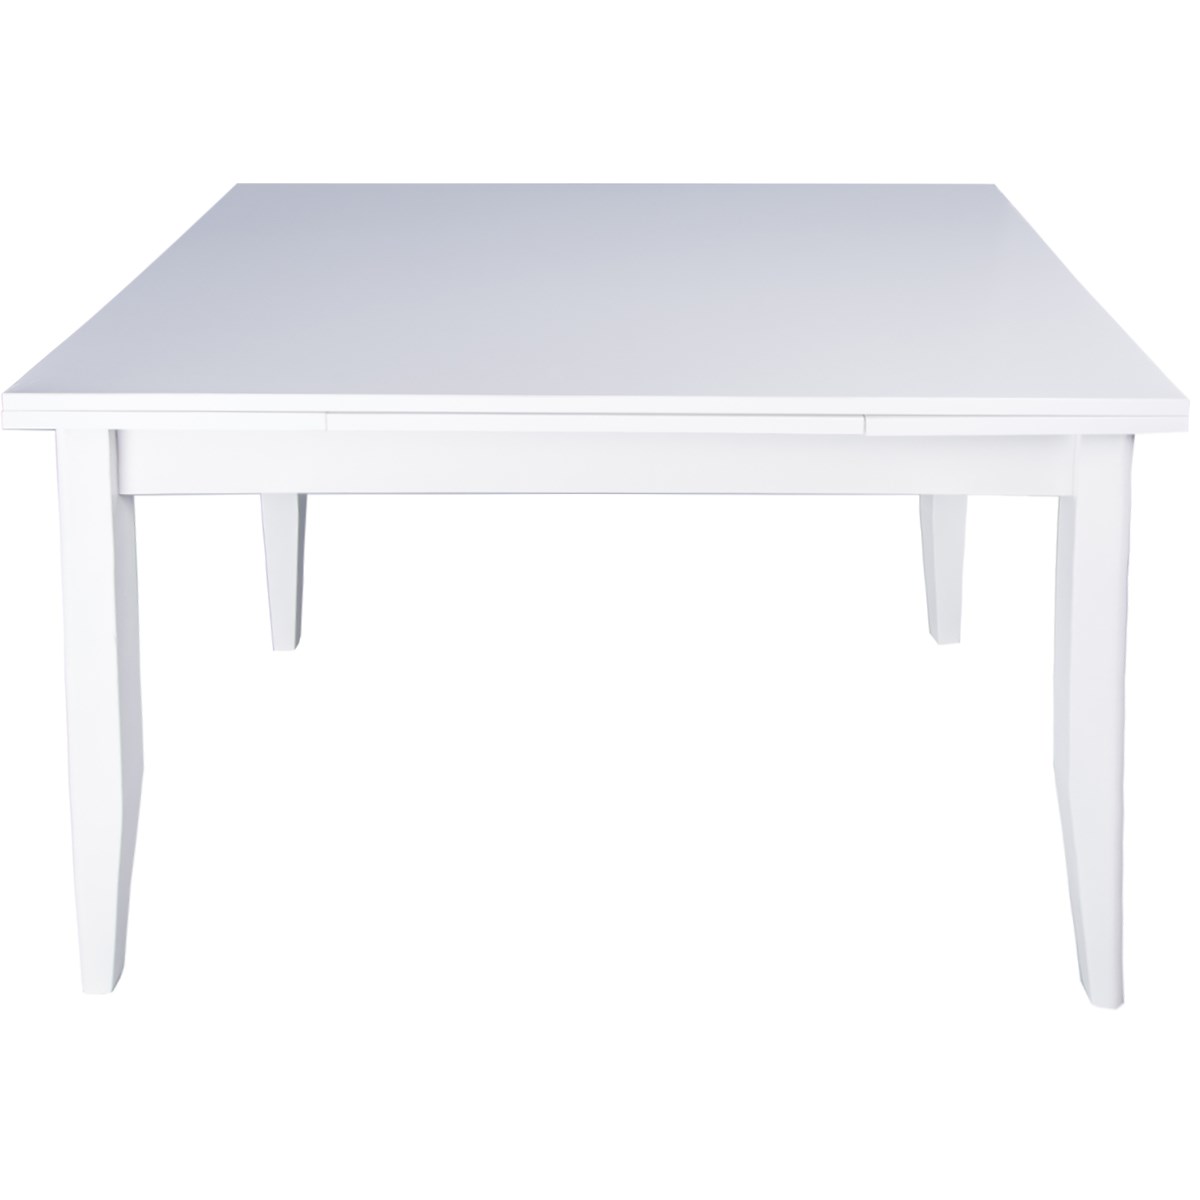 Beyaz Ahşap Masa | Kristal Masa & Sandalye